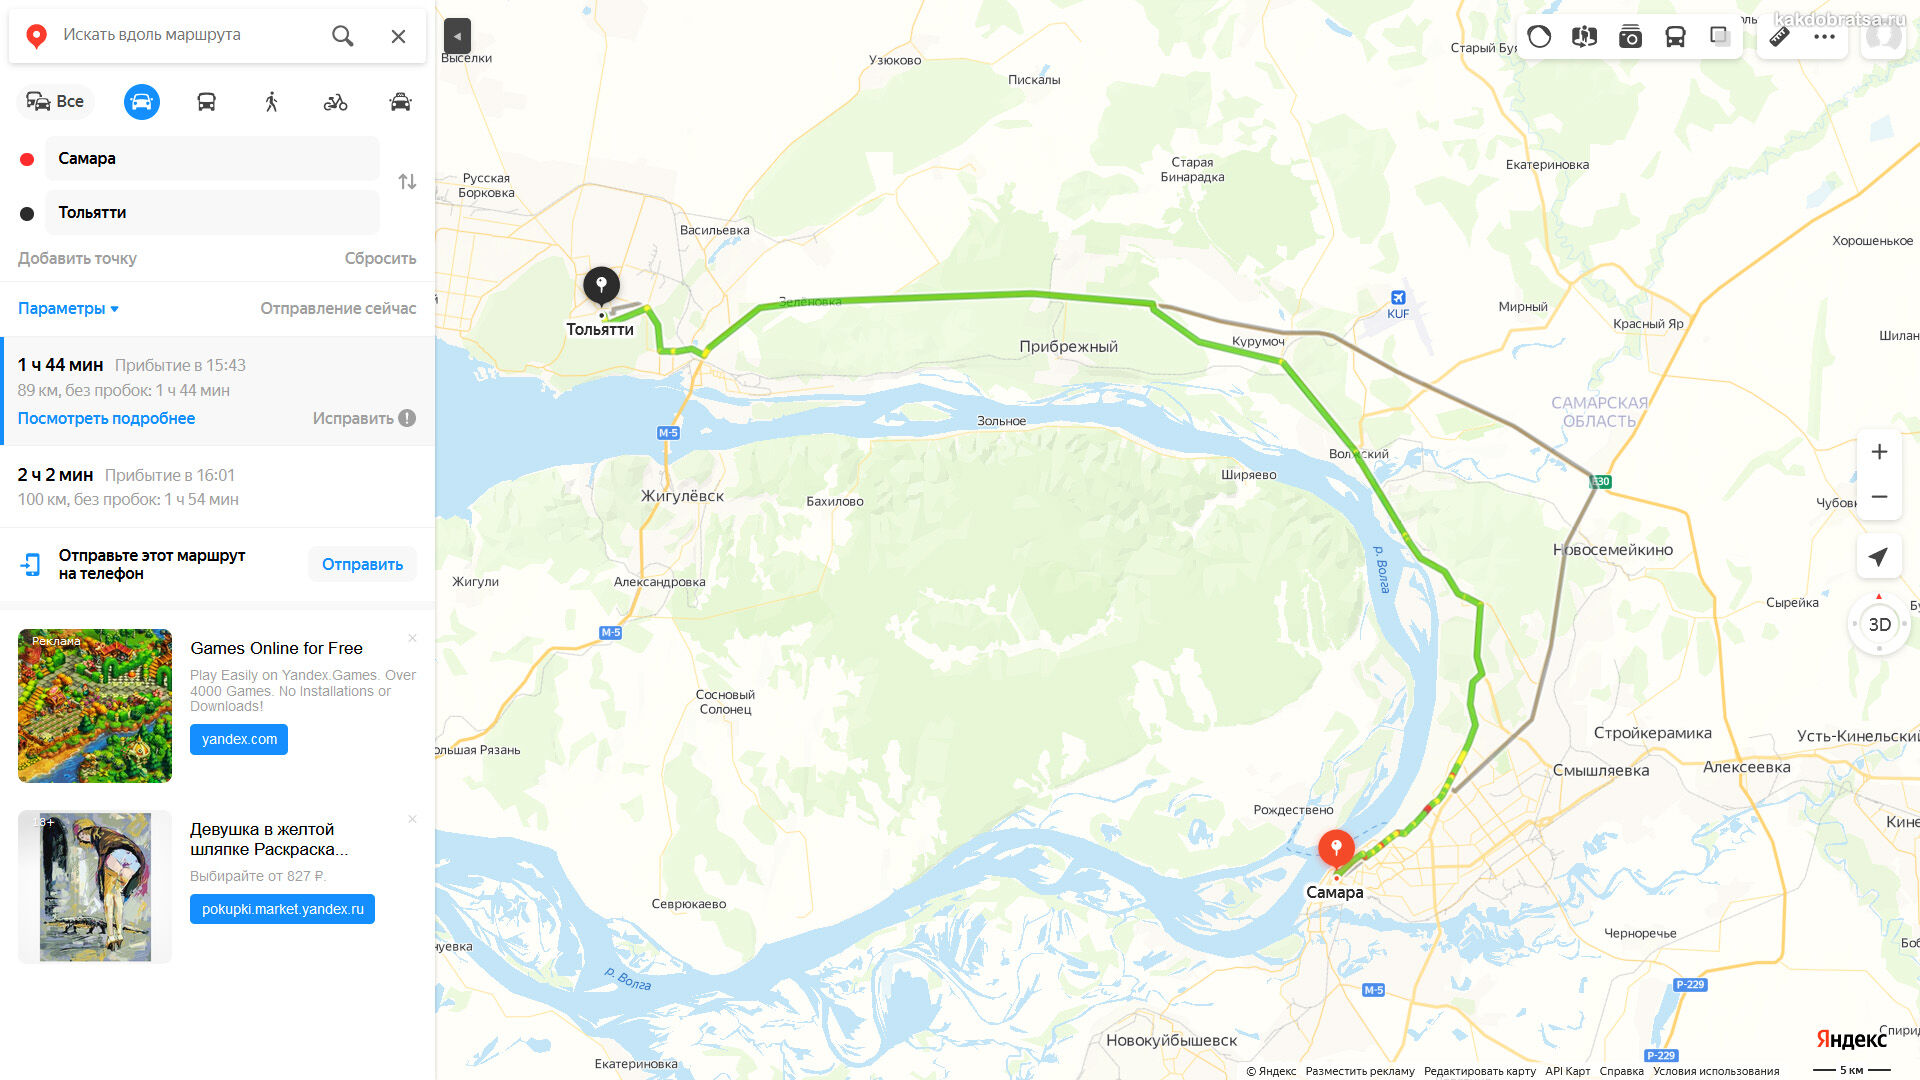 Сколько километров между Тольятти и Самарой по карте